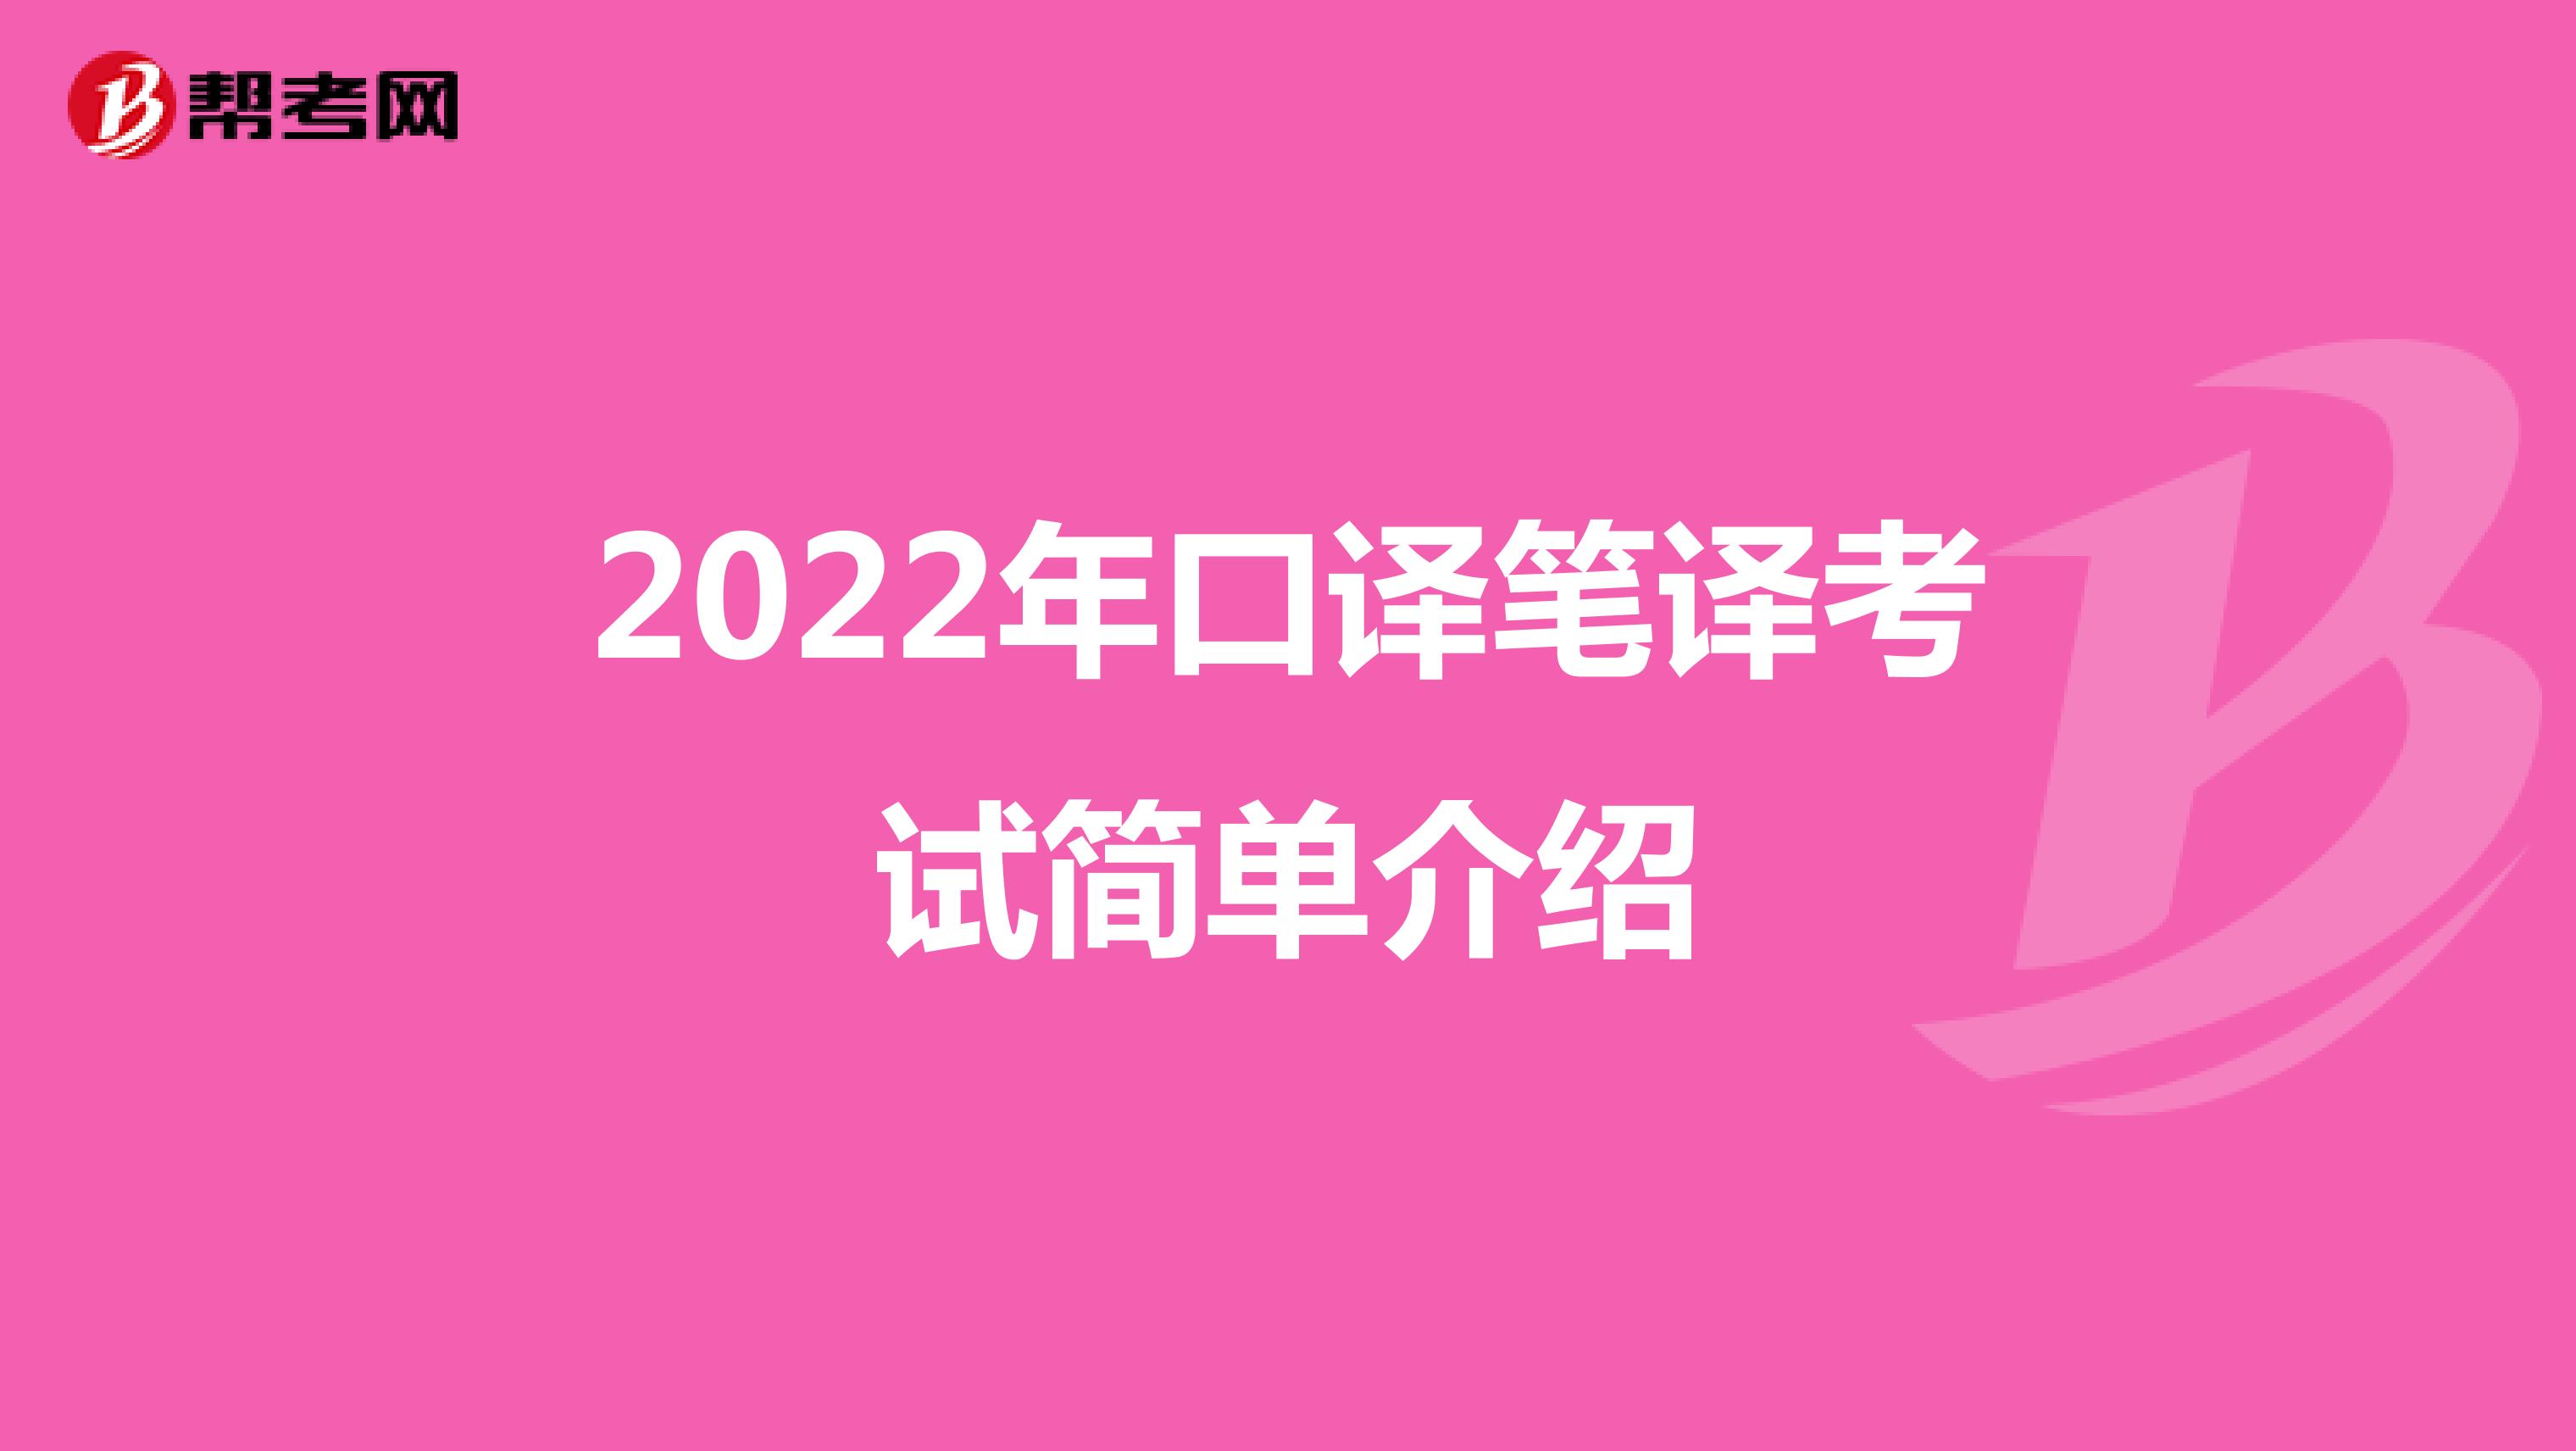 2022年口译笔译考试简单介绍